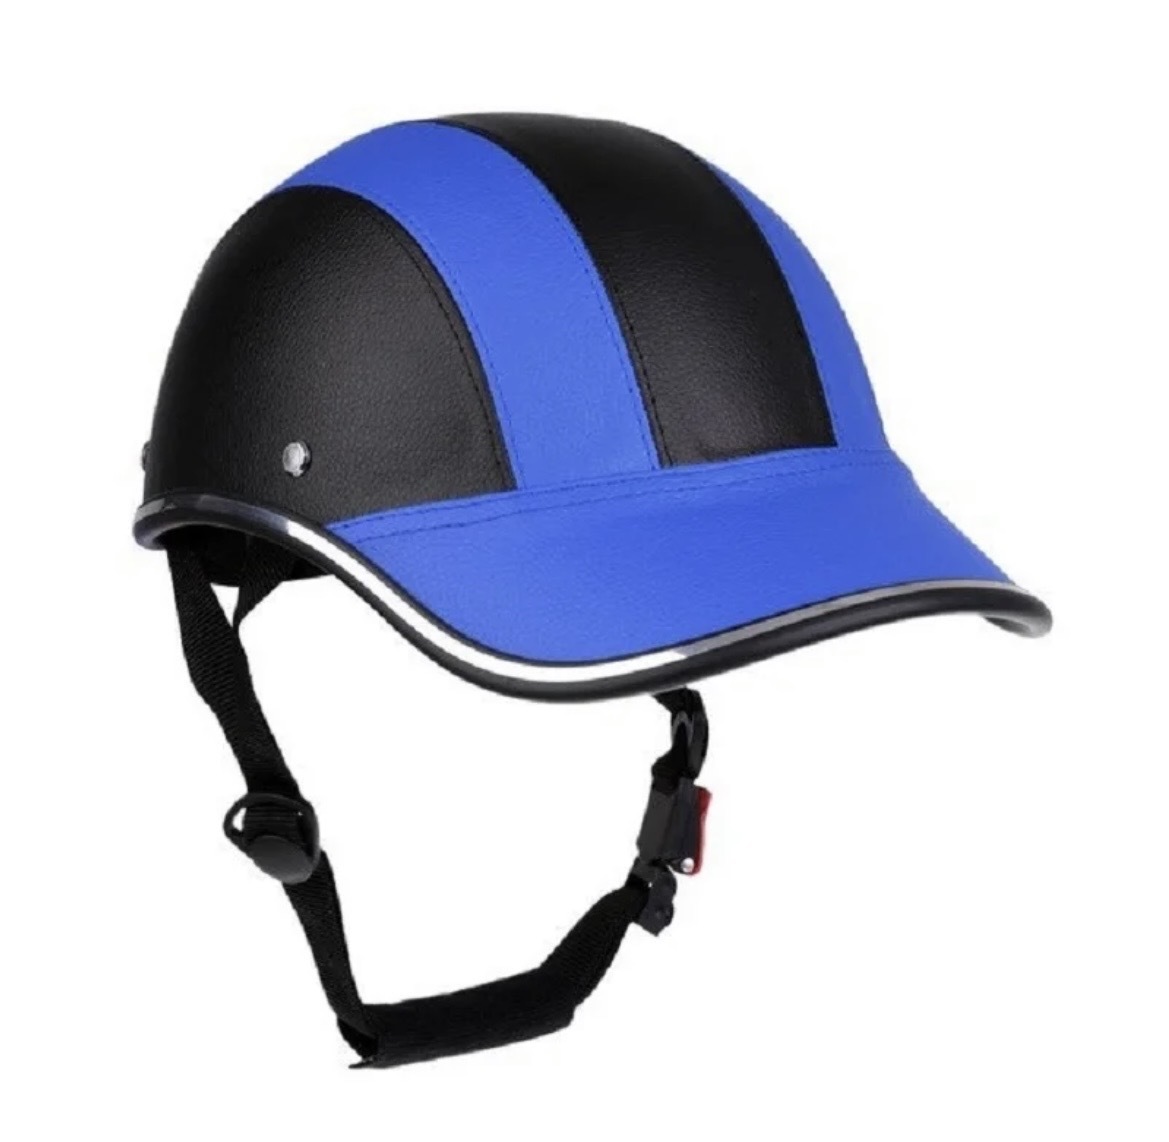 【ブルー】自転車用 ヘルメット 野球帽タイプ サイクリング バイク ヘルメット ロードバイク 調整可能 ユニセックス